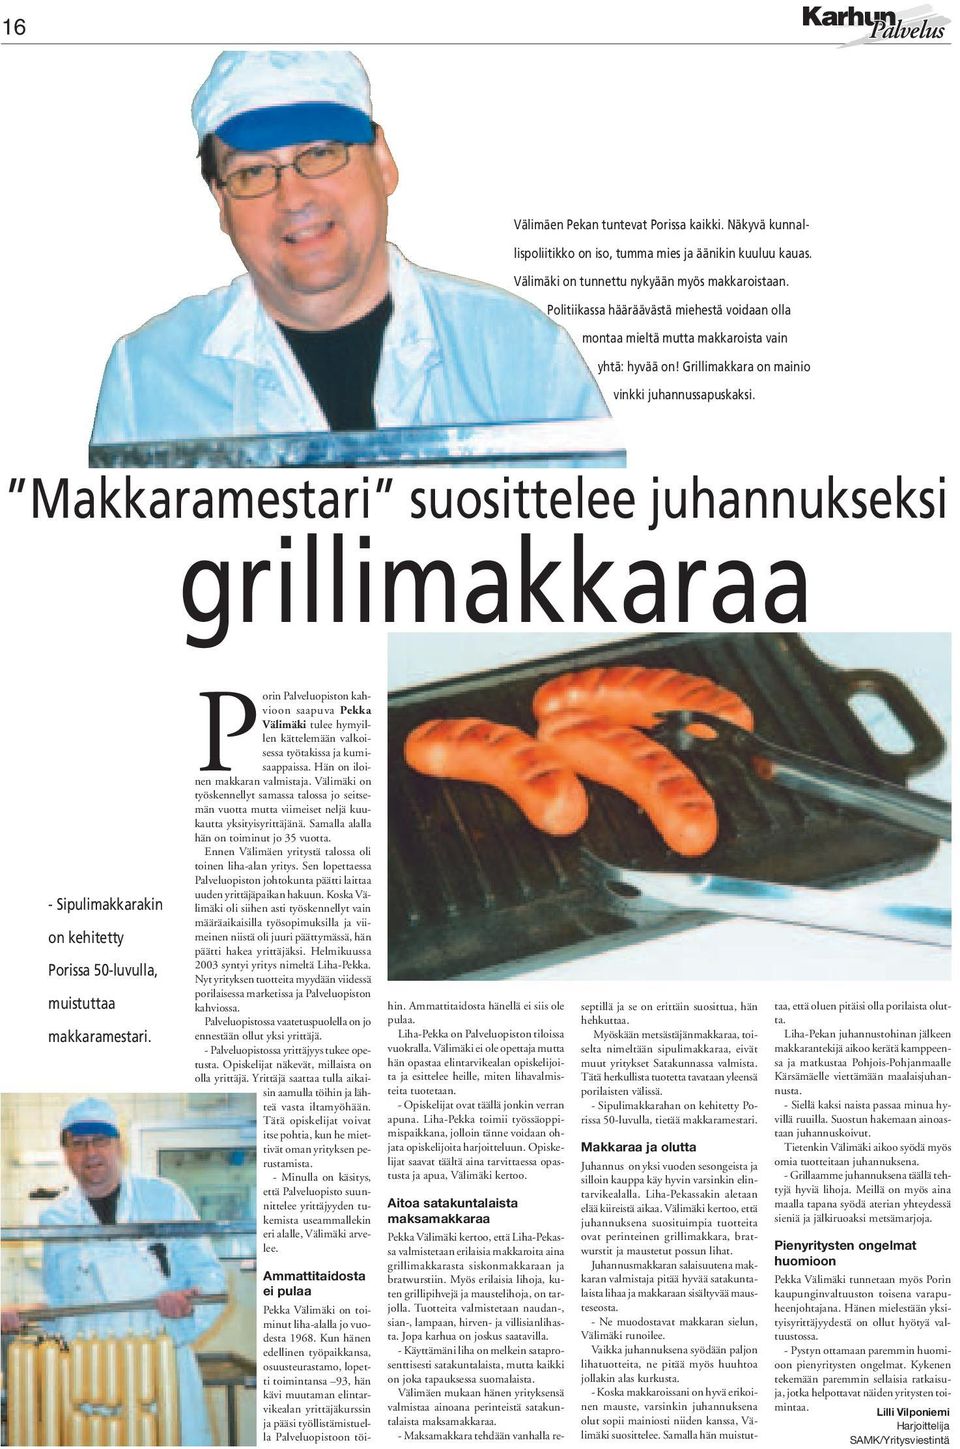 Makkaramestari suosittelee juhannukseksi grillimakkaraa - Sipulimakkarakin on kehitetty Porissa 50-luvulla, muistuttaa makkaramestari.